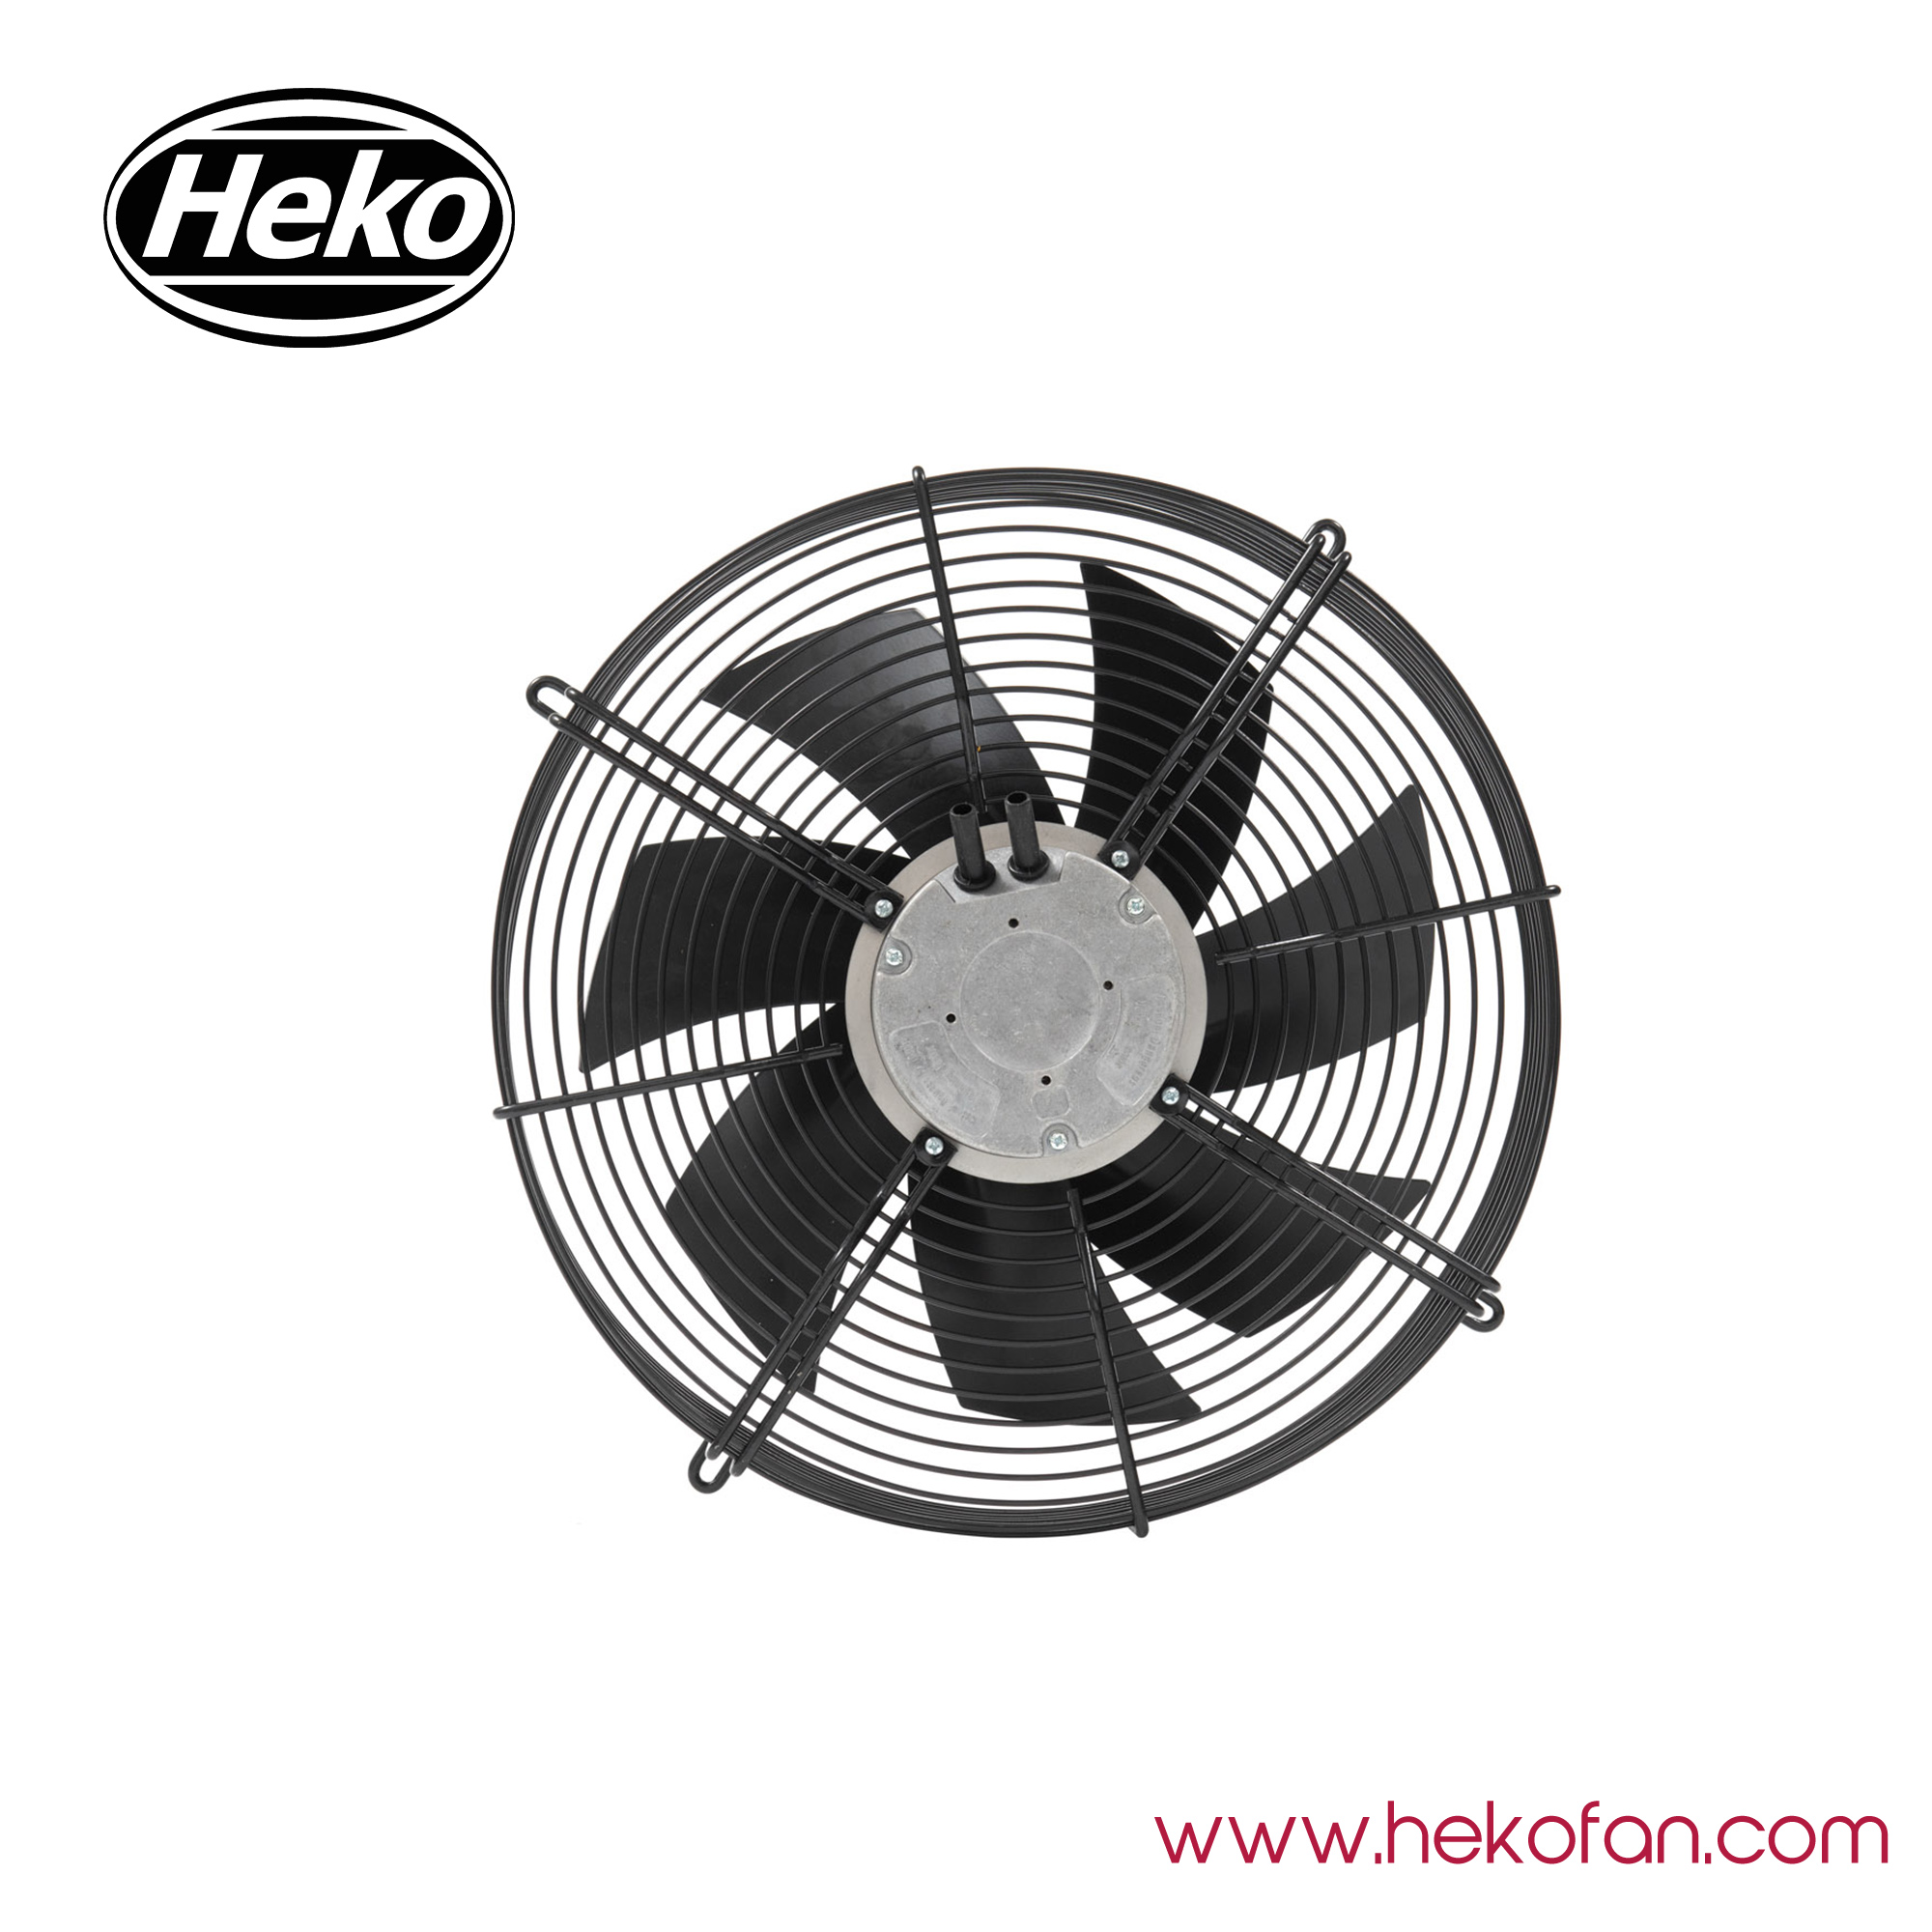 HEKO EC300mm Steel Coated In Black Industrial Axial Fan